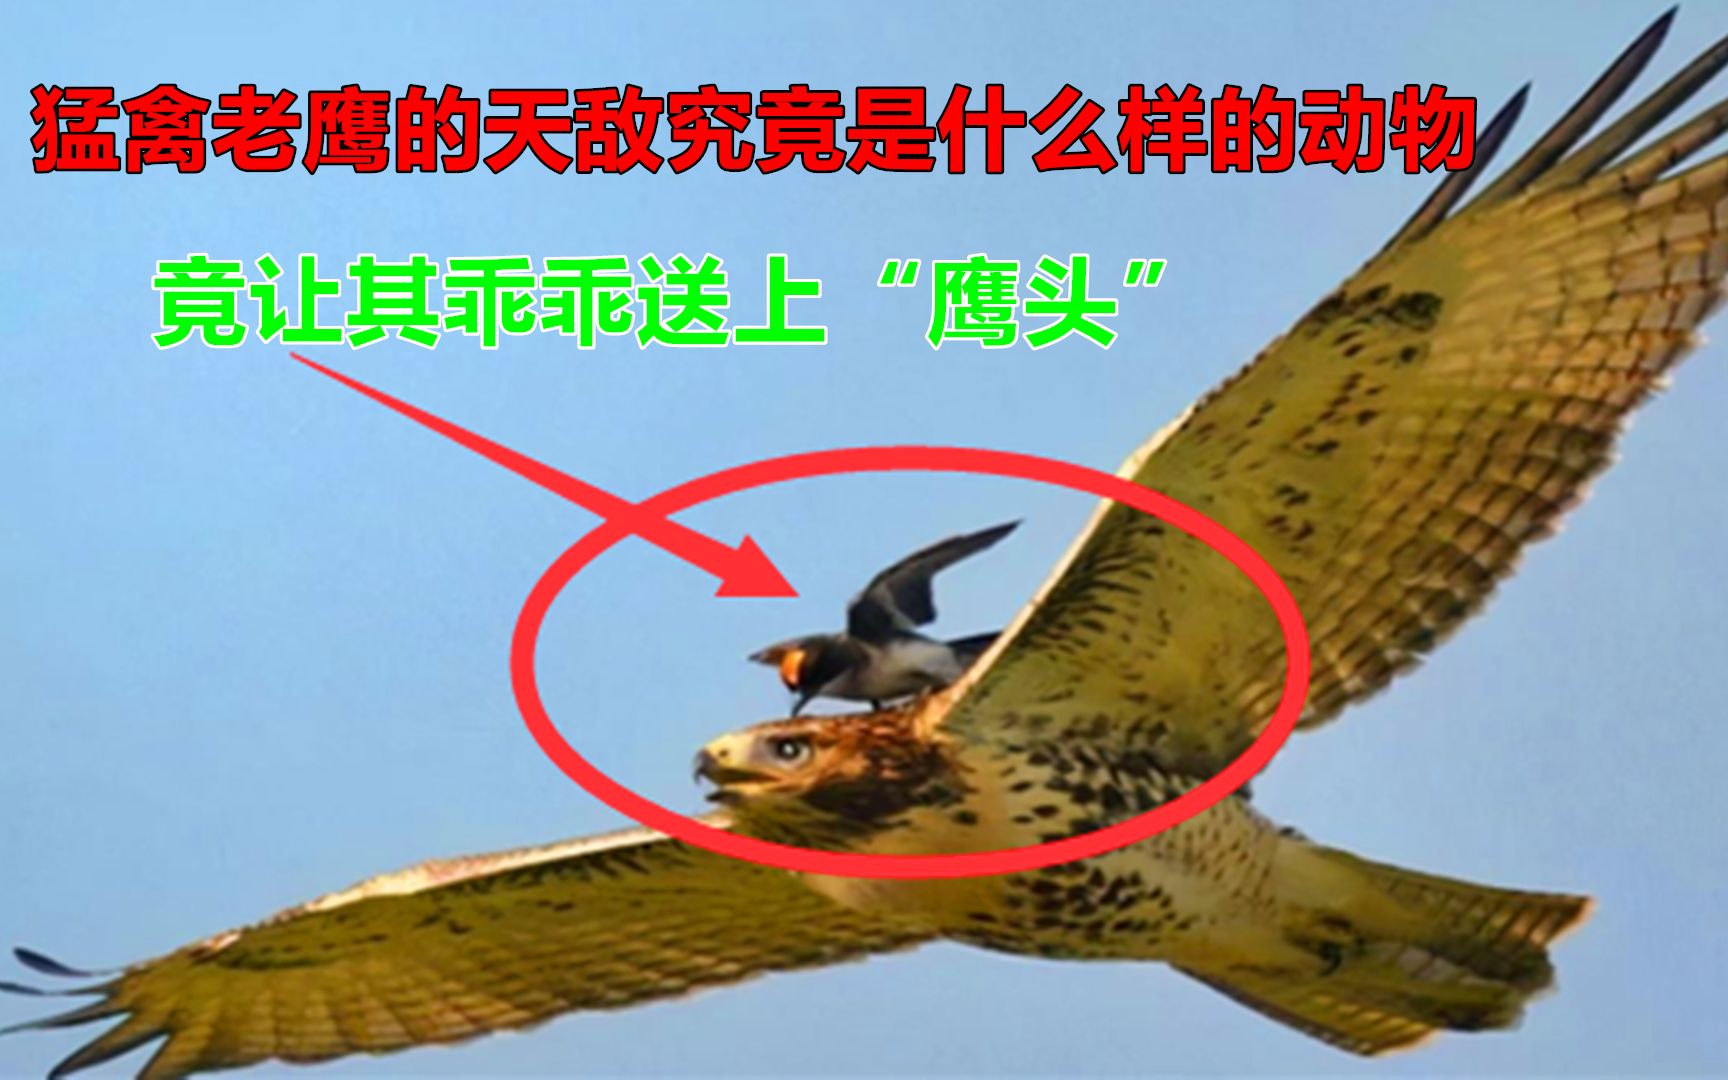 空中霸主老鹰也有天敌,一旦被必胜鸟盯上,插翅也难逃